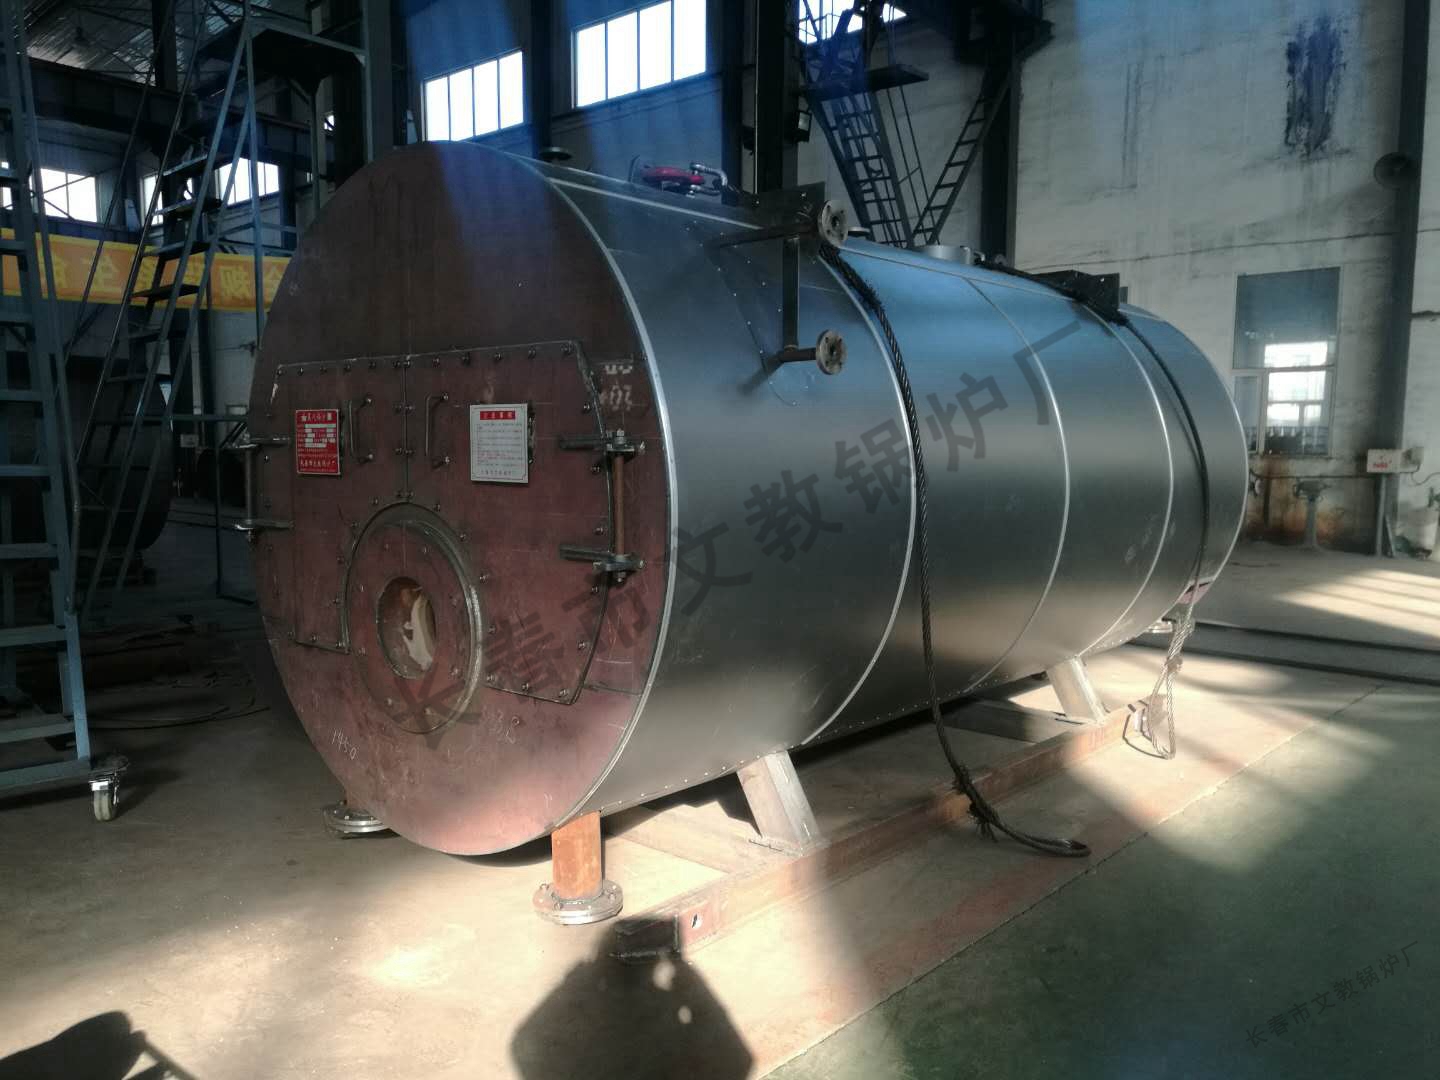 WNS系列燃生物质蒸汽、热水锅炉